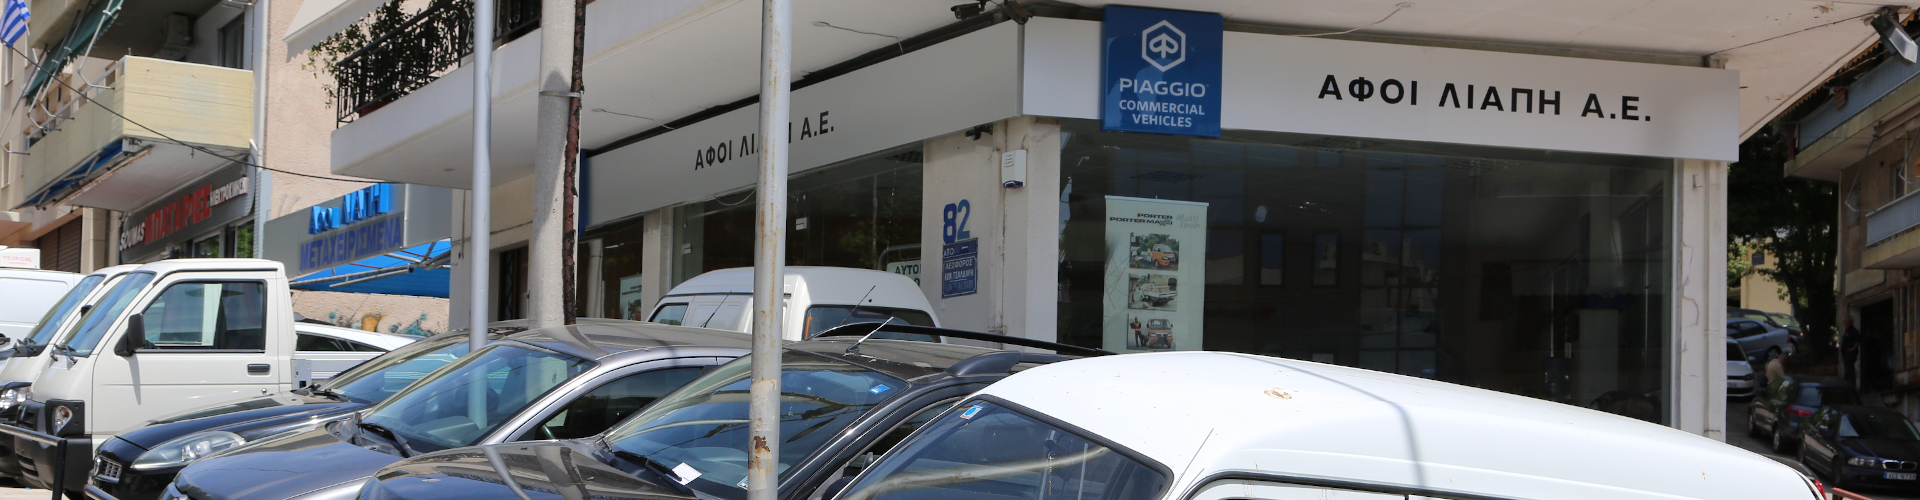 Εξουσιοδοτημένο Συνεργείο Piaggio - ΑΦΟΙ Λιάπη